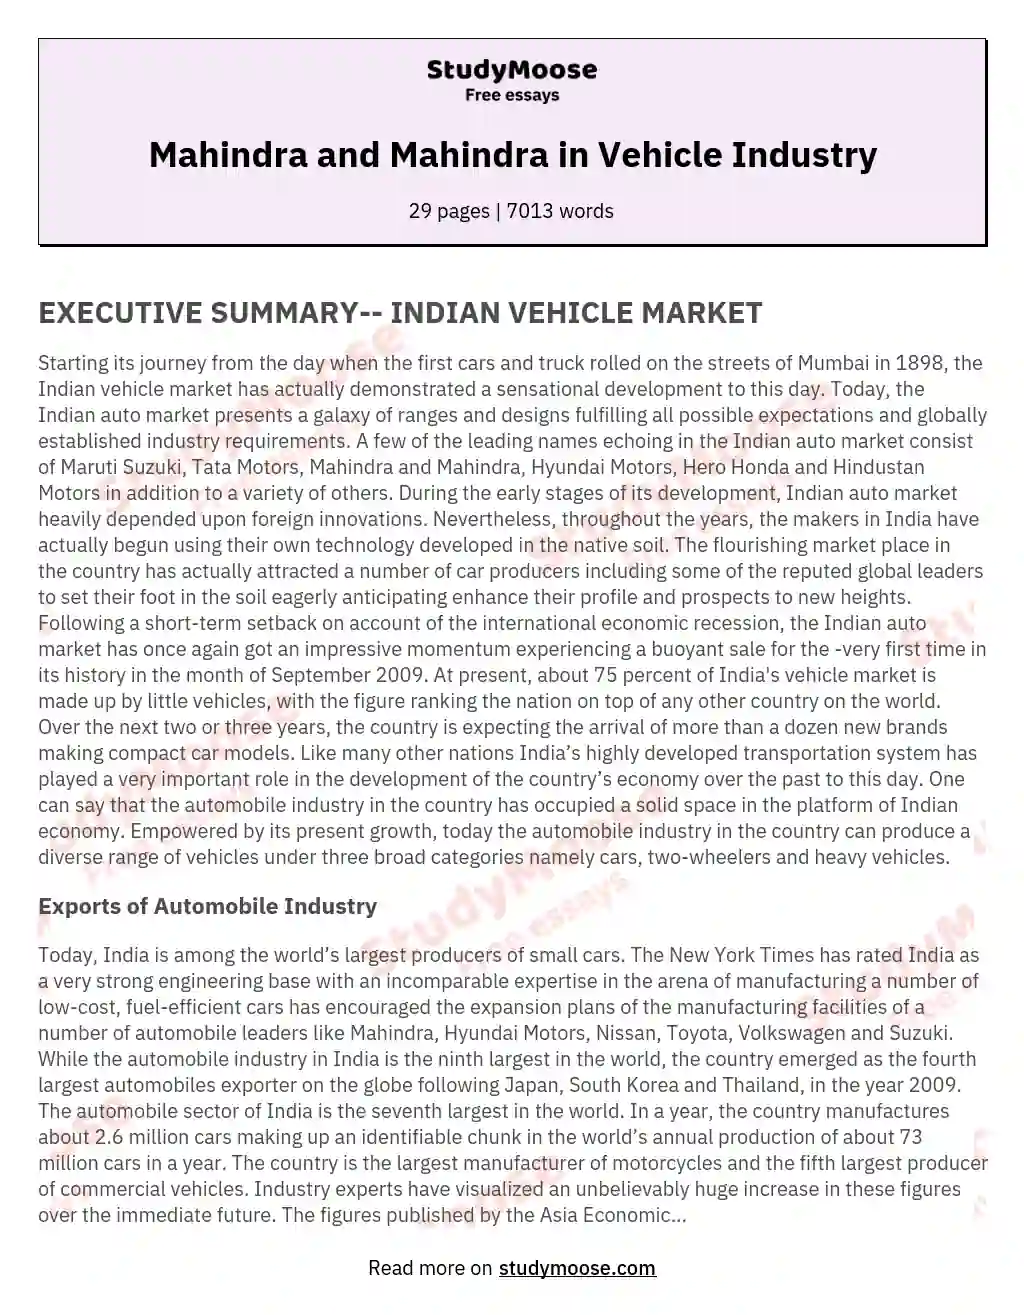 Mahindra and Mahindra in Vehicle Industry essay